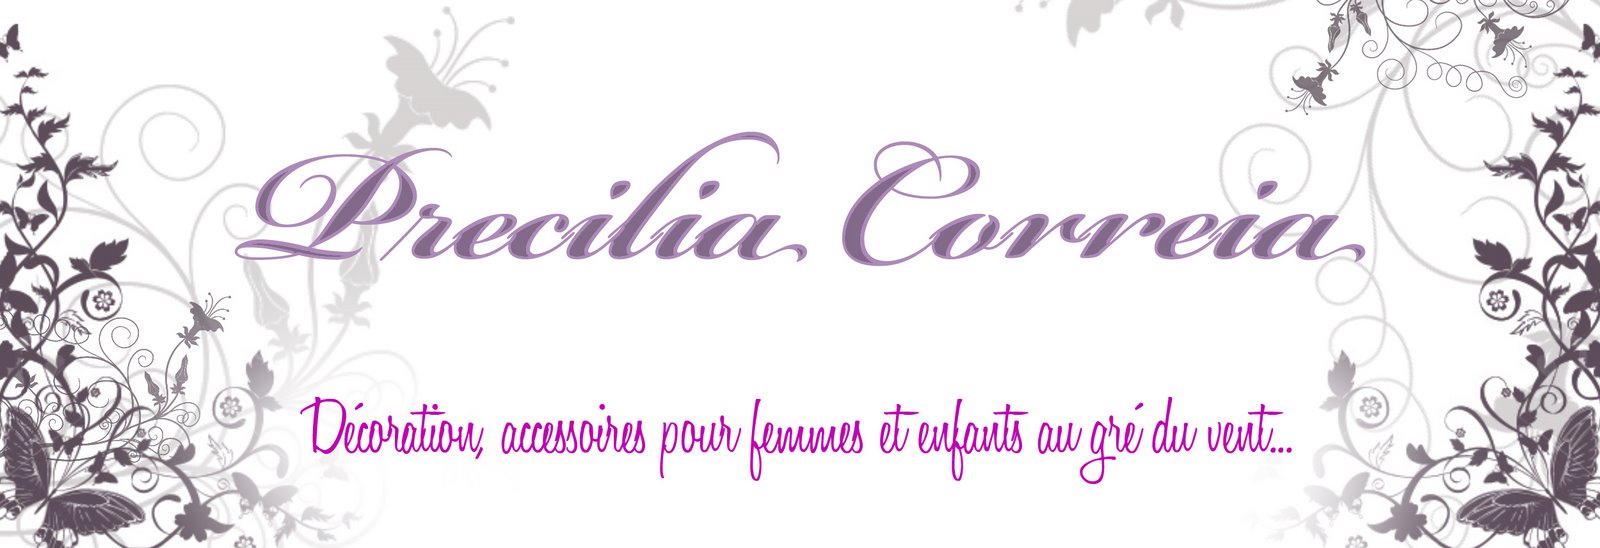 Precilia Correia ♥♥♥